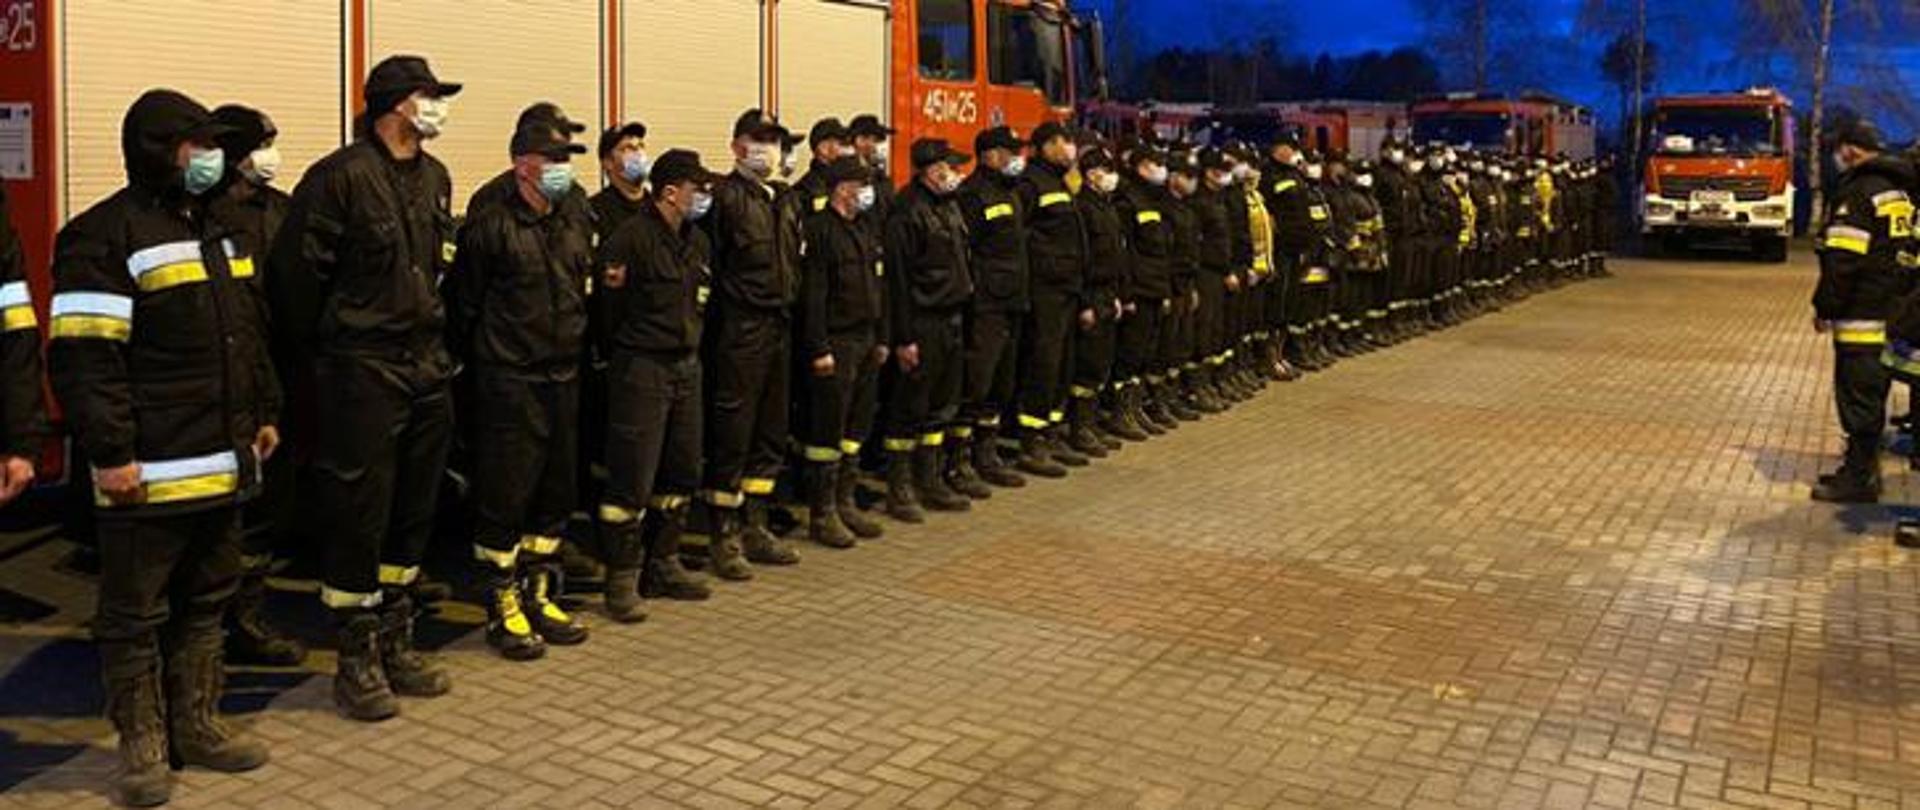 Na zdjęciu kilkudziesięciu strażaków ustawionych w dwuszeregu podczas zbiórki. Przed nimi stoją inni strażacy zwróceni twarzą do ustawionych w dwuszeregu. W tle pojazdy pożarnicze.